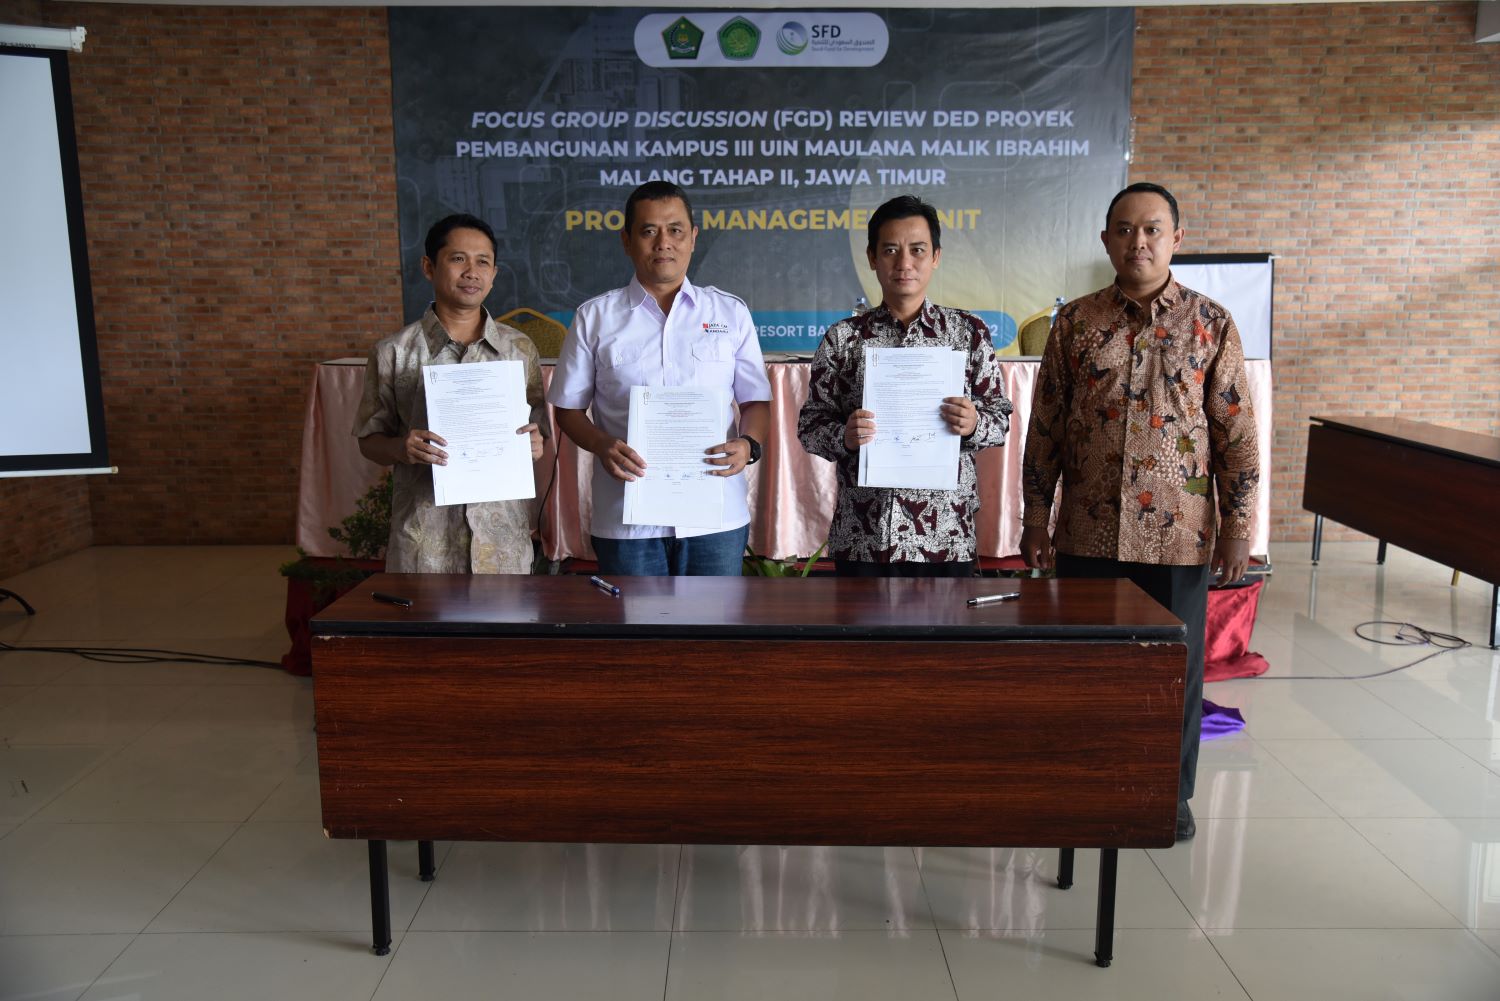 Persiapkan Pembangunan Kampus III UIN Malang, PMU Gelar Pertemuan Tim